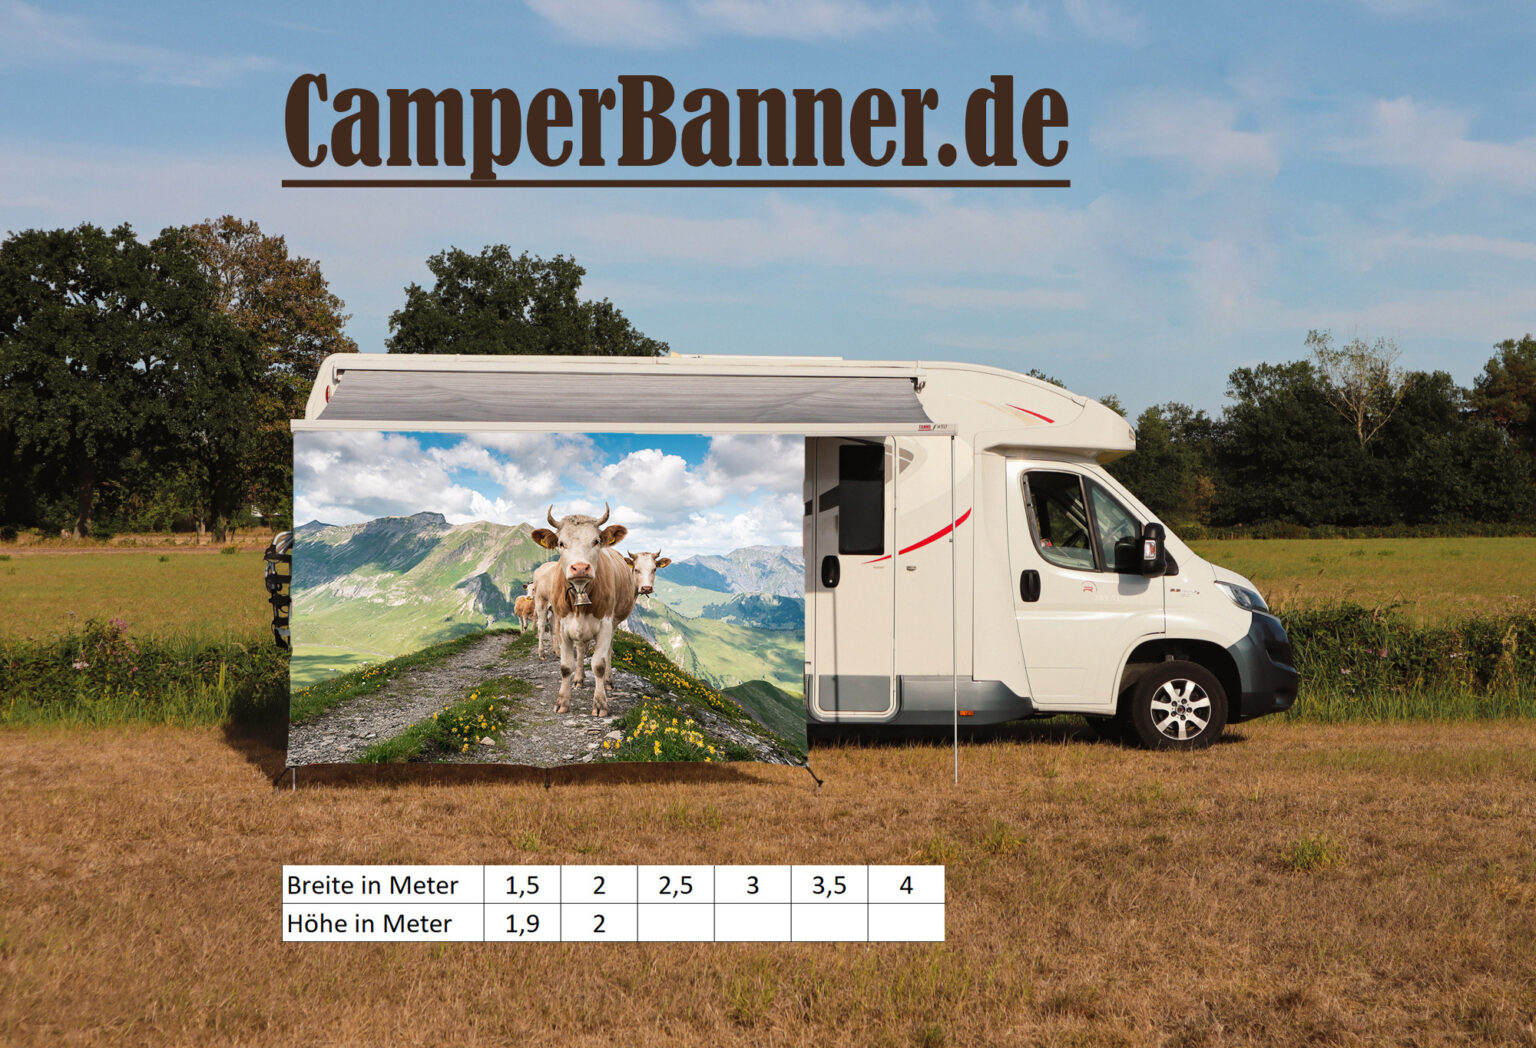 Wohnmobil Banner Markise Sonnenschutz Staunende Kuh auf dem Berg